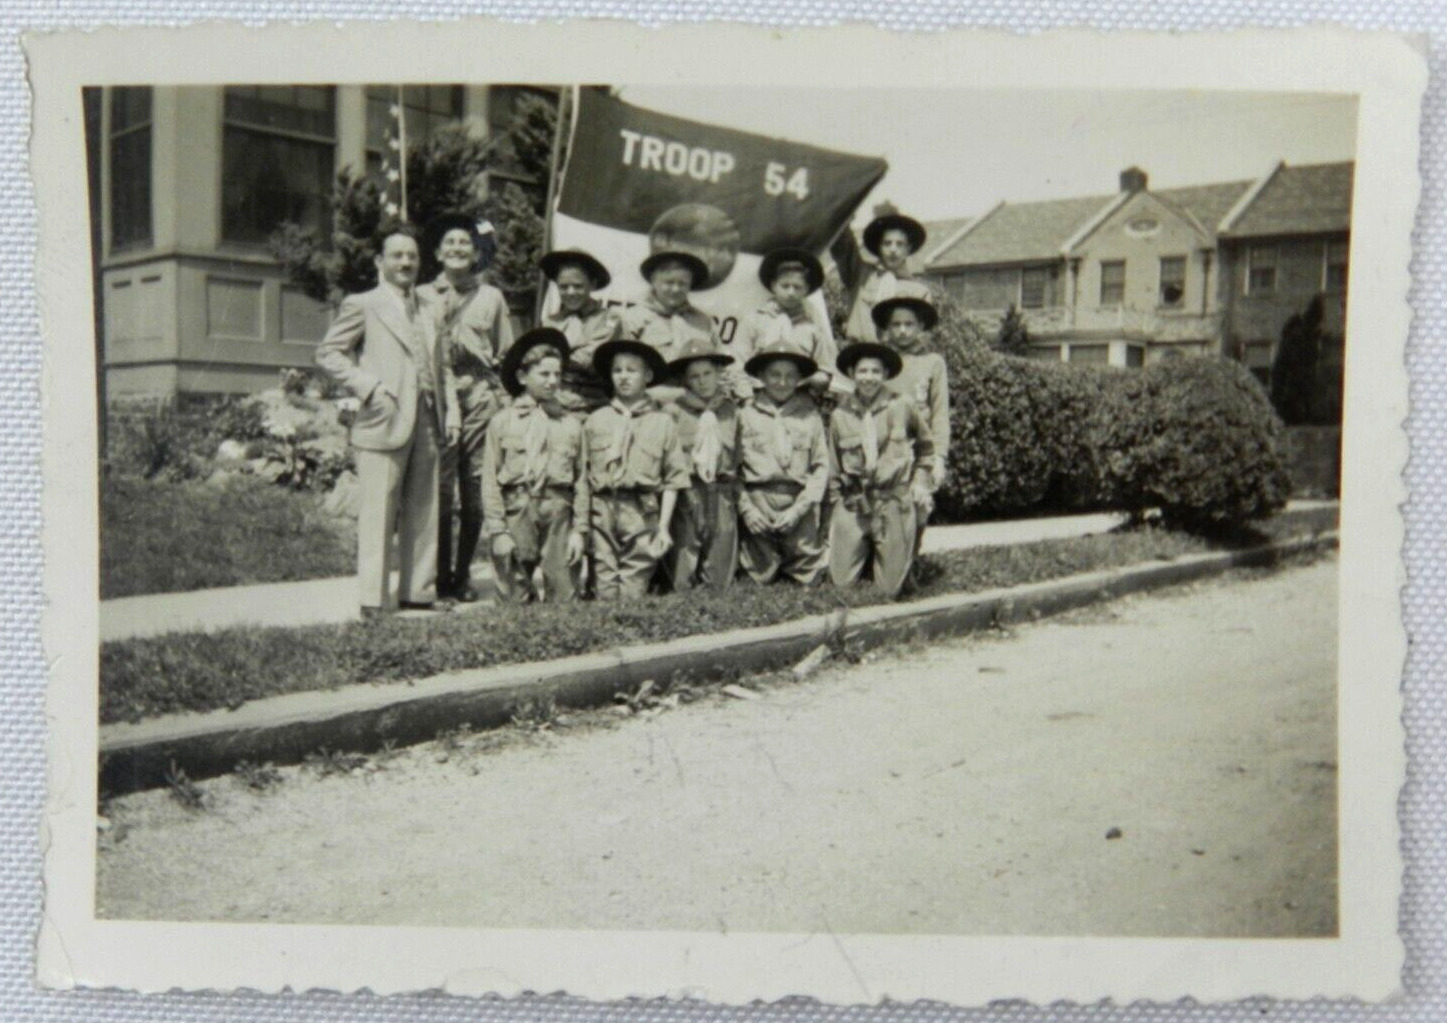 Troop 54 of the Boy Scouts Uniform Portrait - July 1937 Vintage Photograph